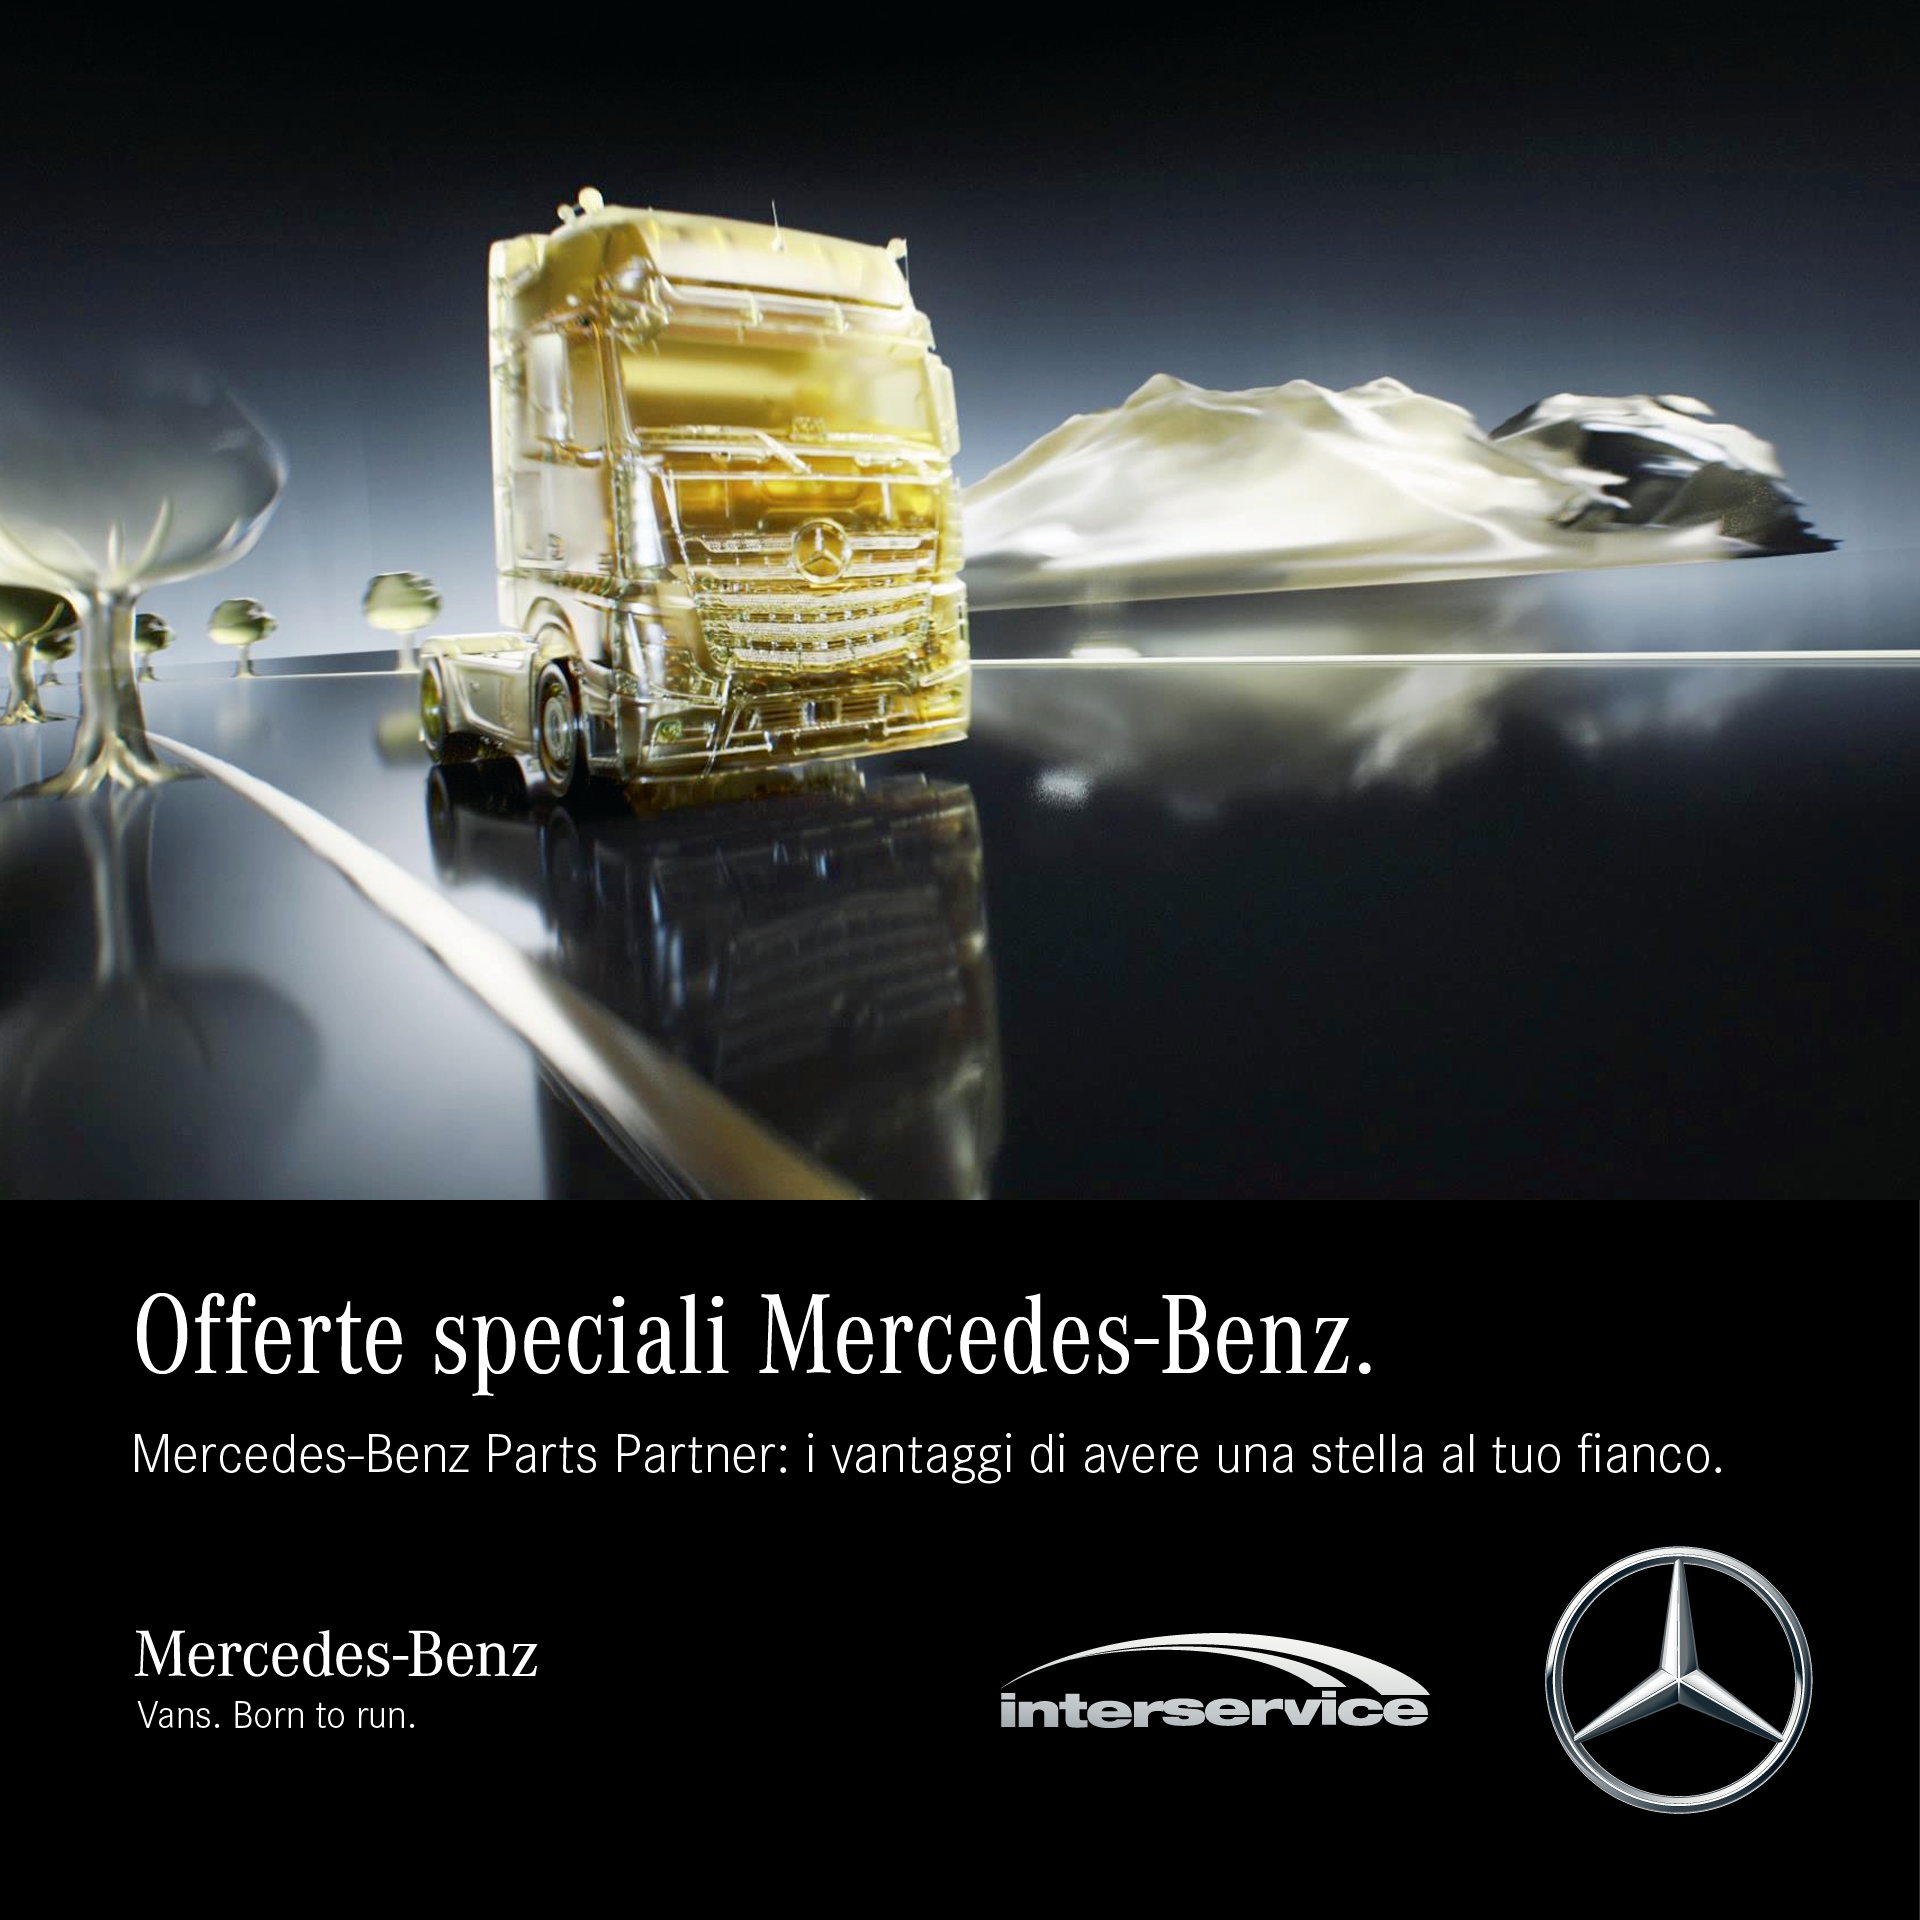 Offerte Speciali Mercedes Benz